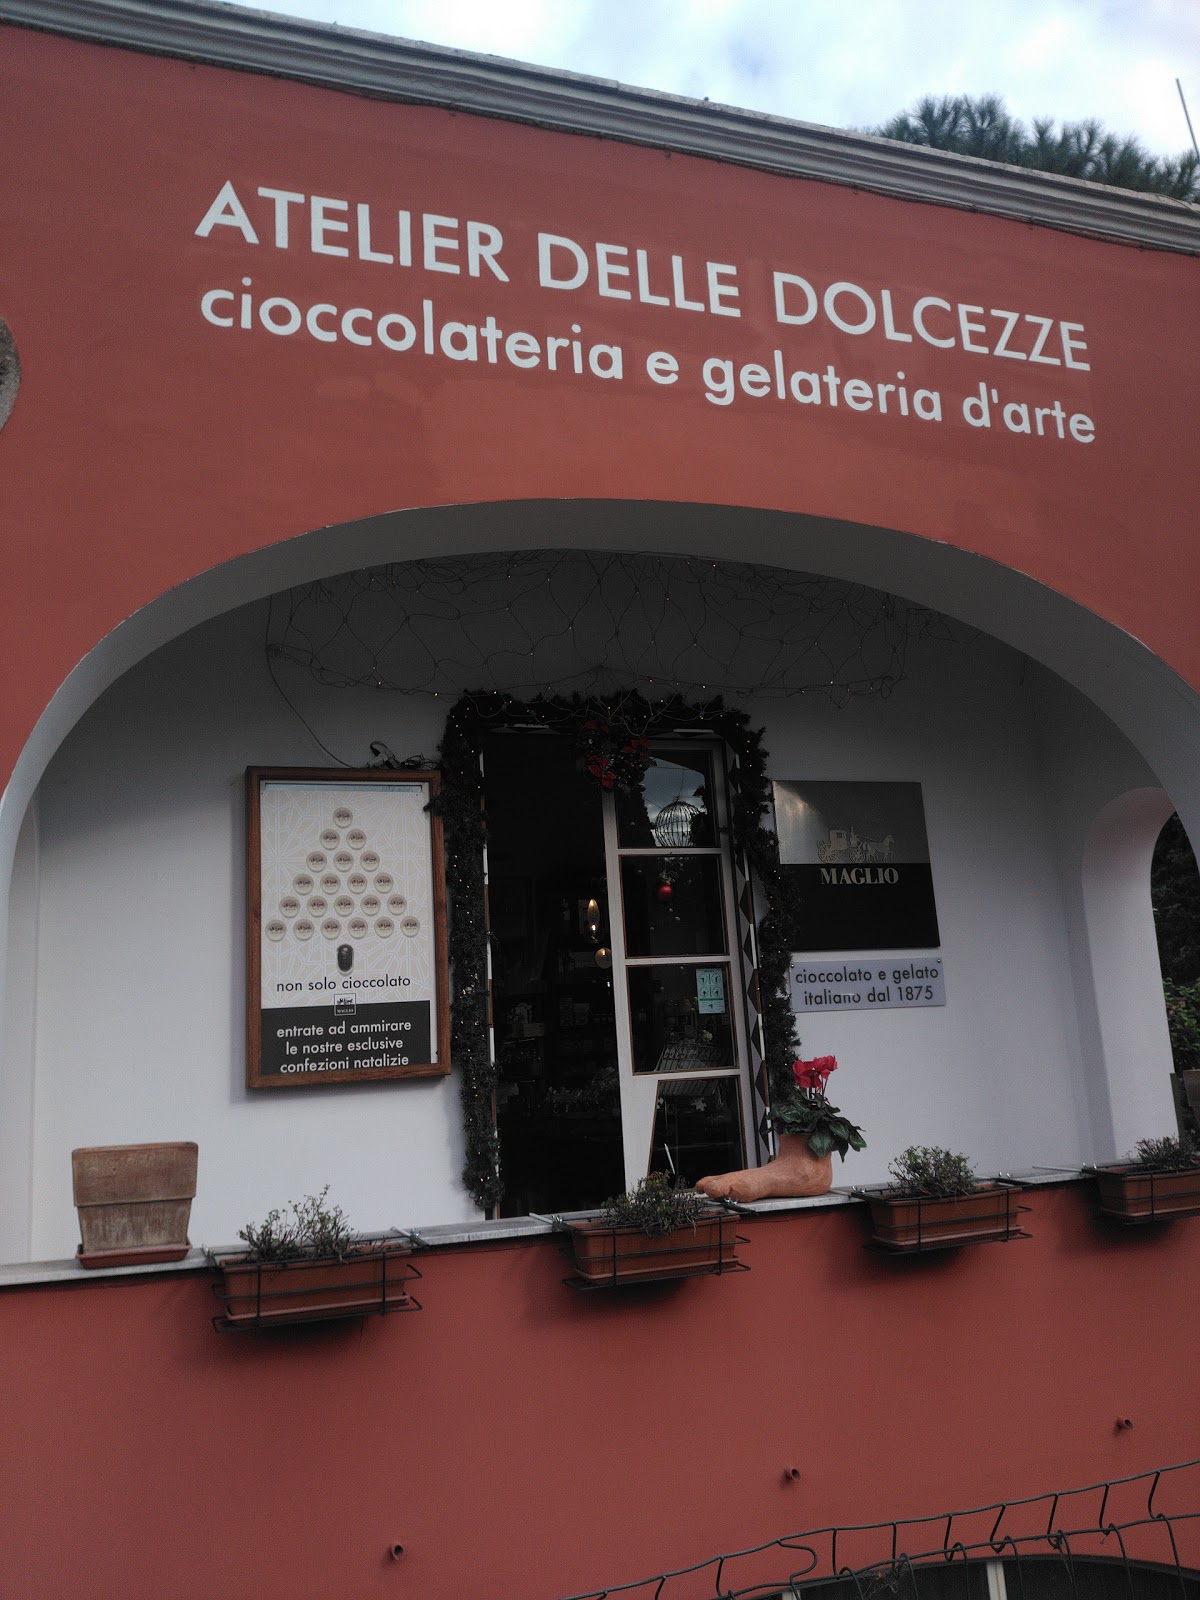 Foto di Atelier delle Dolcezze - Cioccolateria e Gelateria d'Arte - Caffè - Tè - Miele - Candele